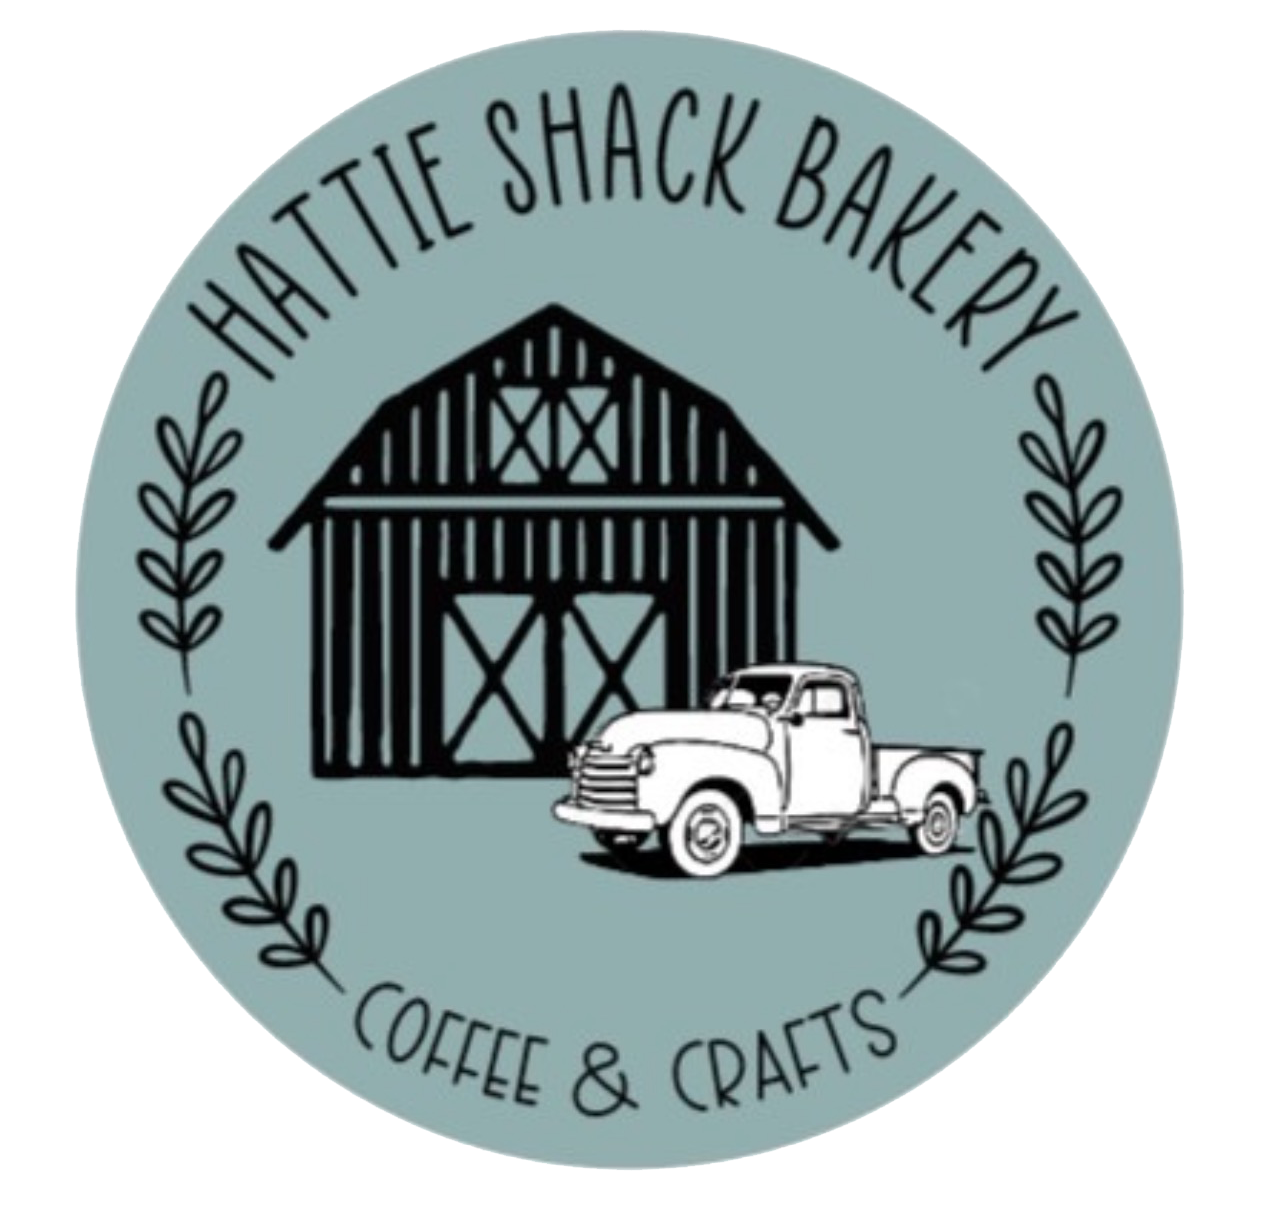 Hattie Shack Bakery